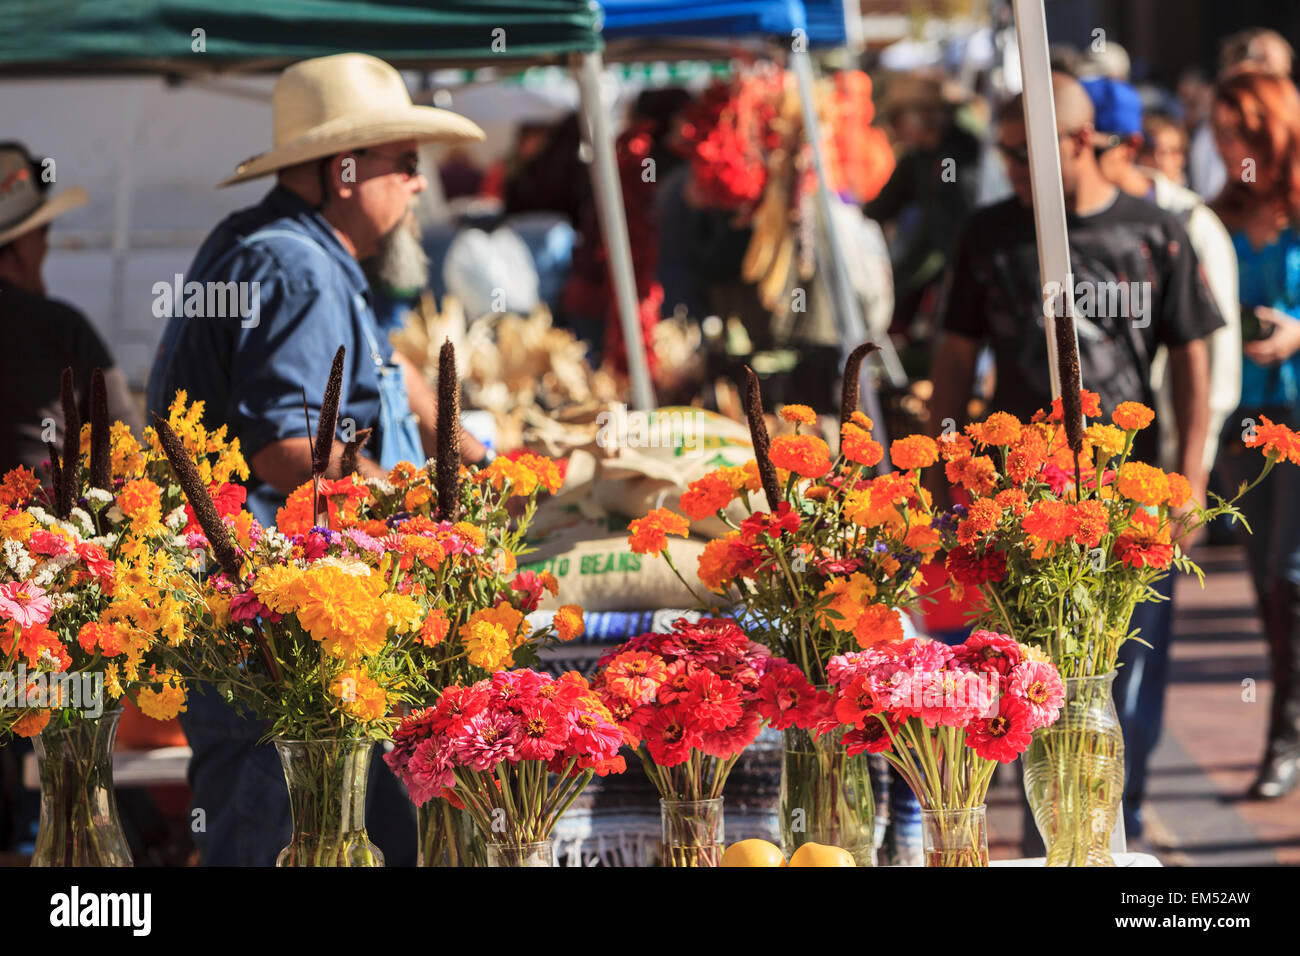 USA, New Mexico, Santa Fe, Shoppers at Santa Fe Saturday Market next to rail yard enjoy bounty of fall harvest Stock Photo